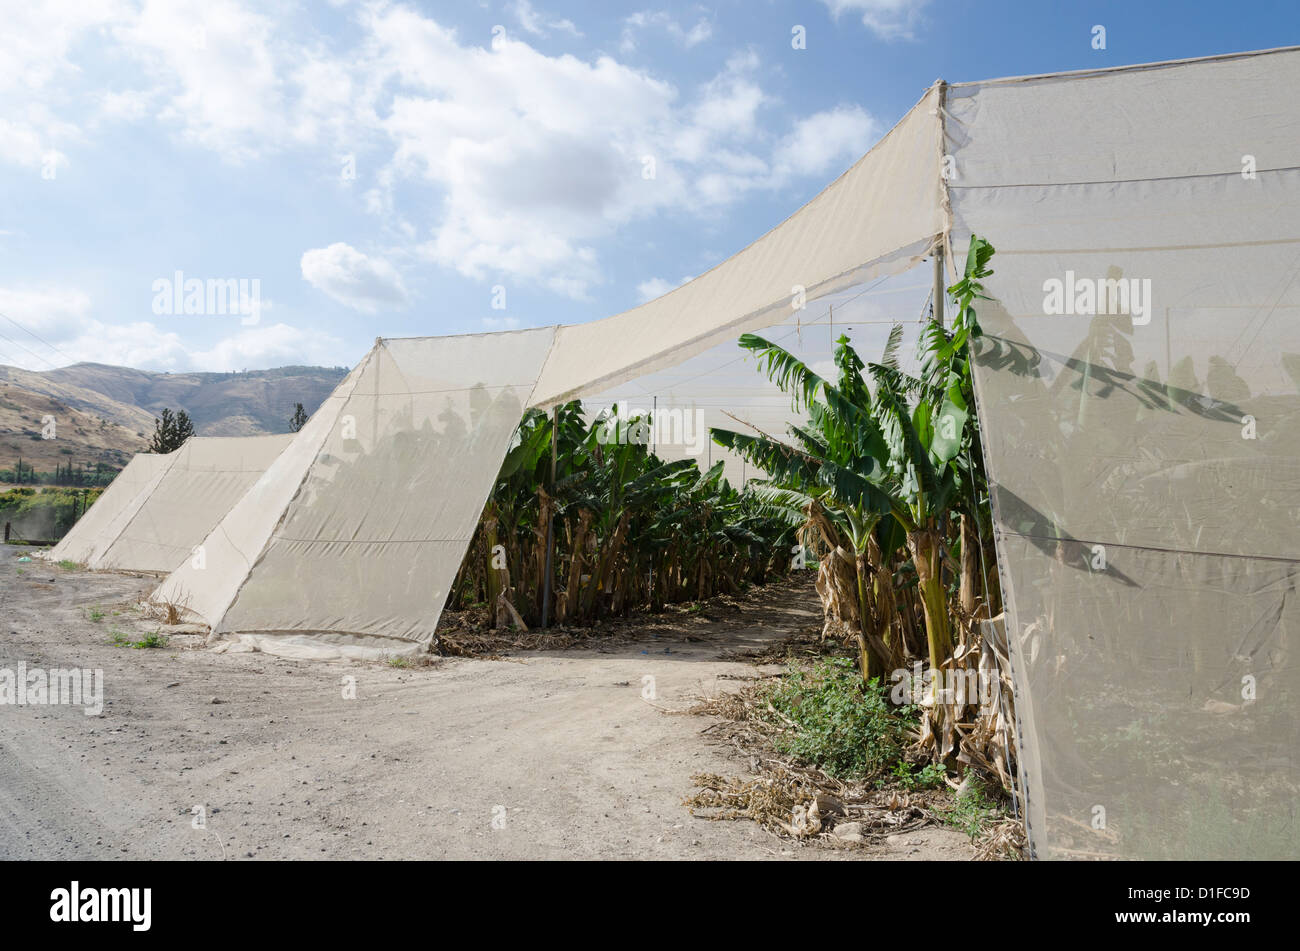 Bananenplantage mit schützenden Netz, See Genezareth, Israel, Nahost Stockfoto